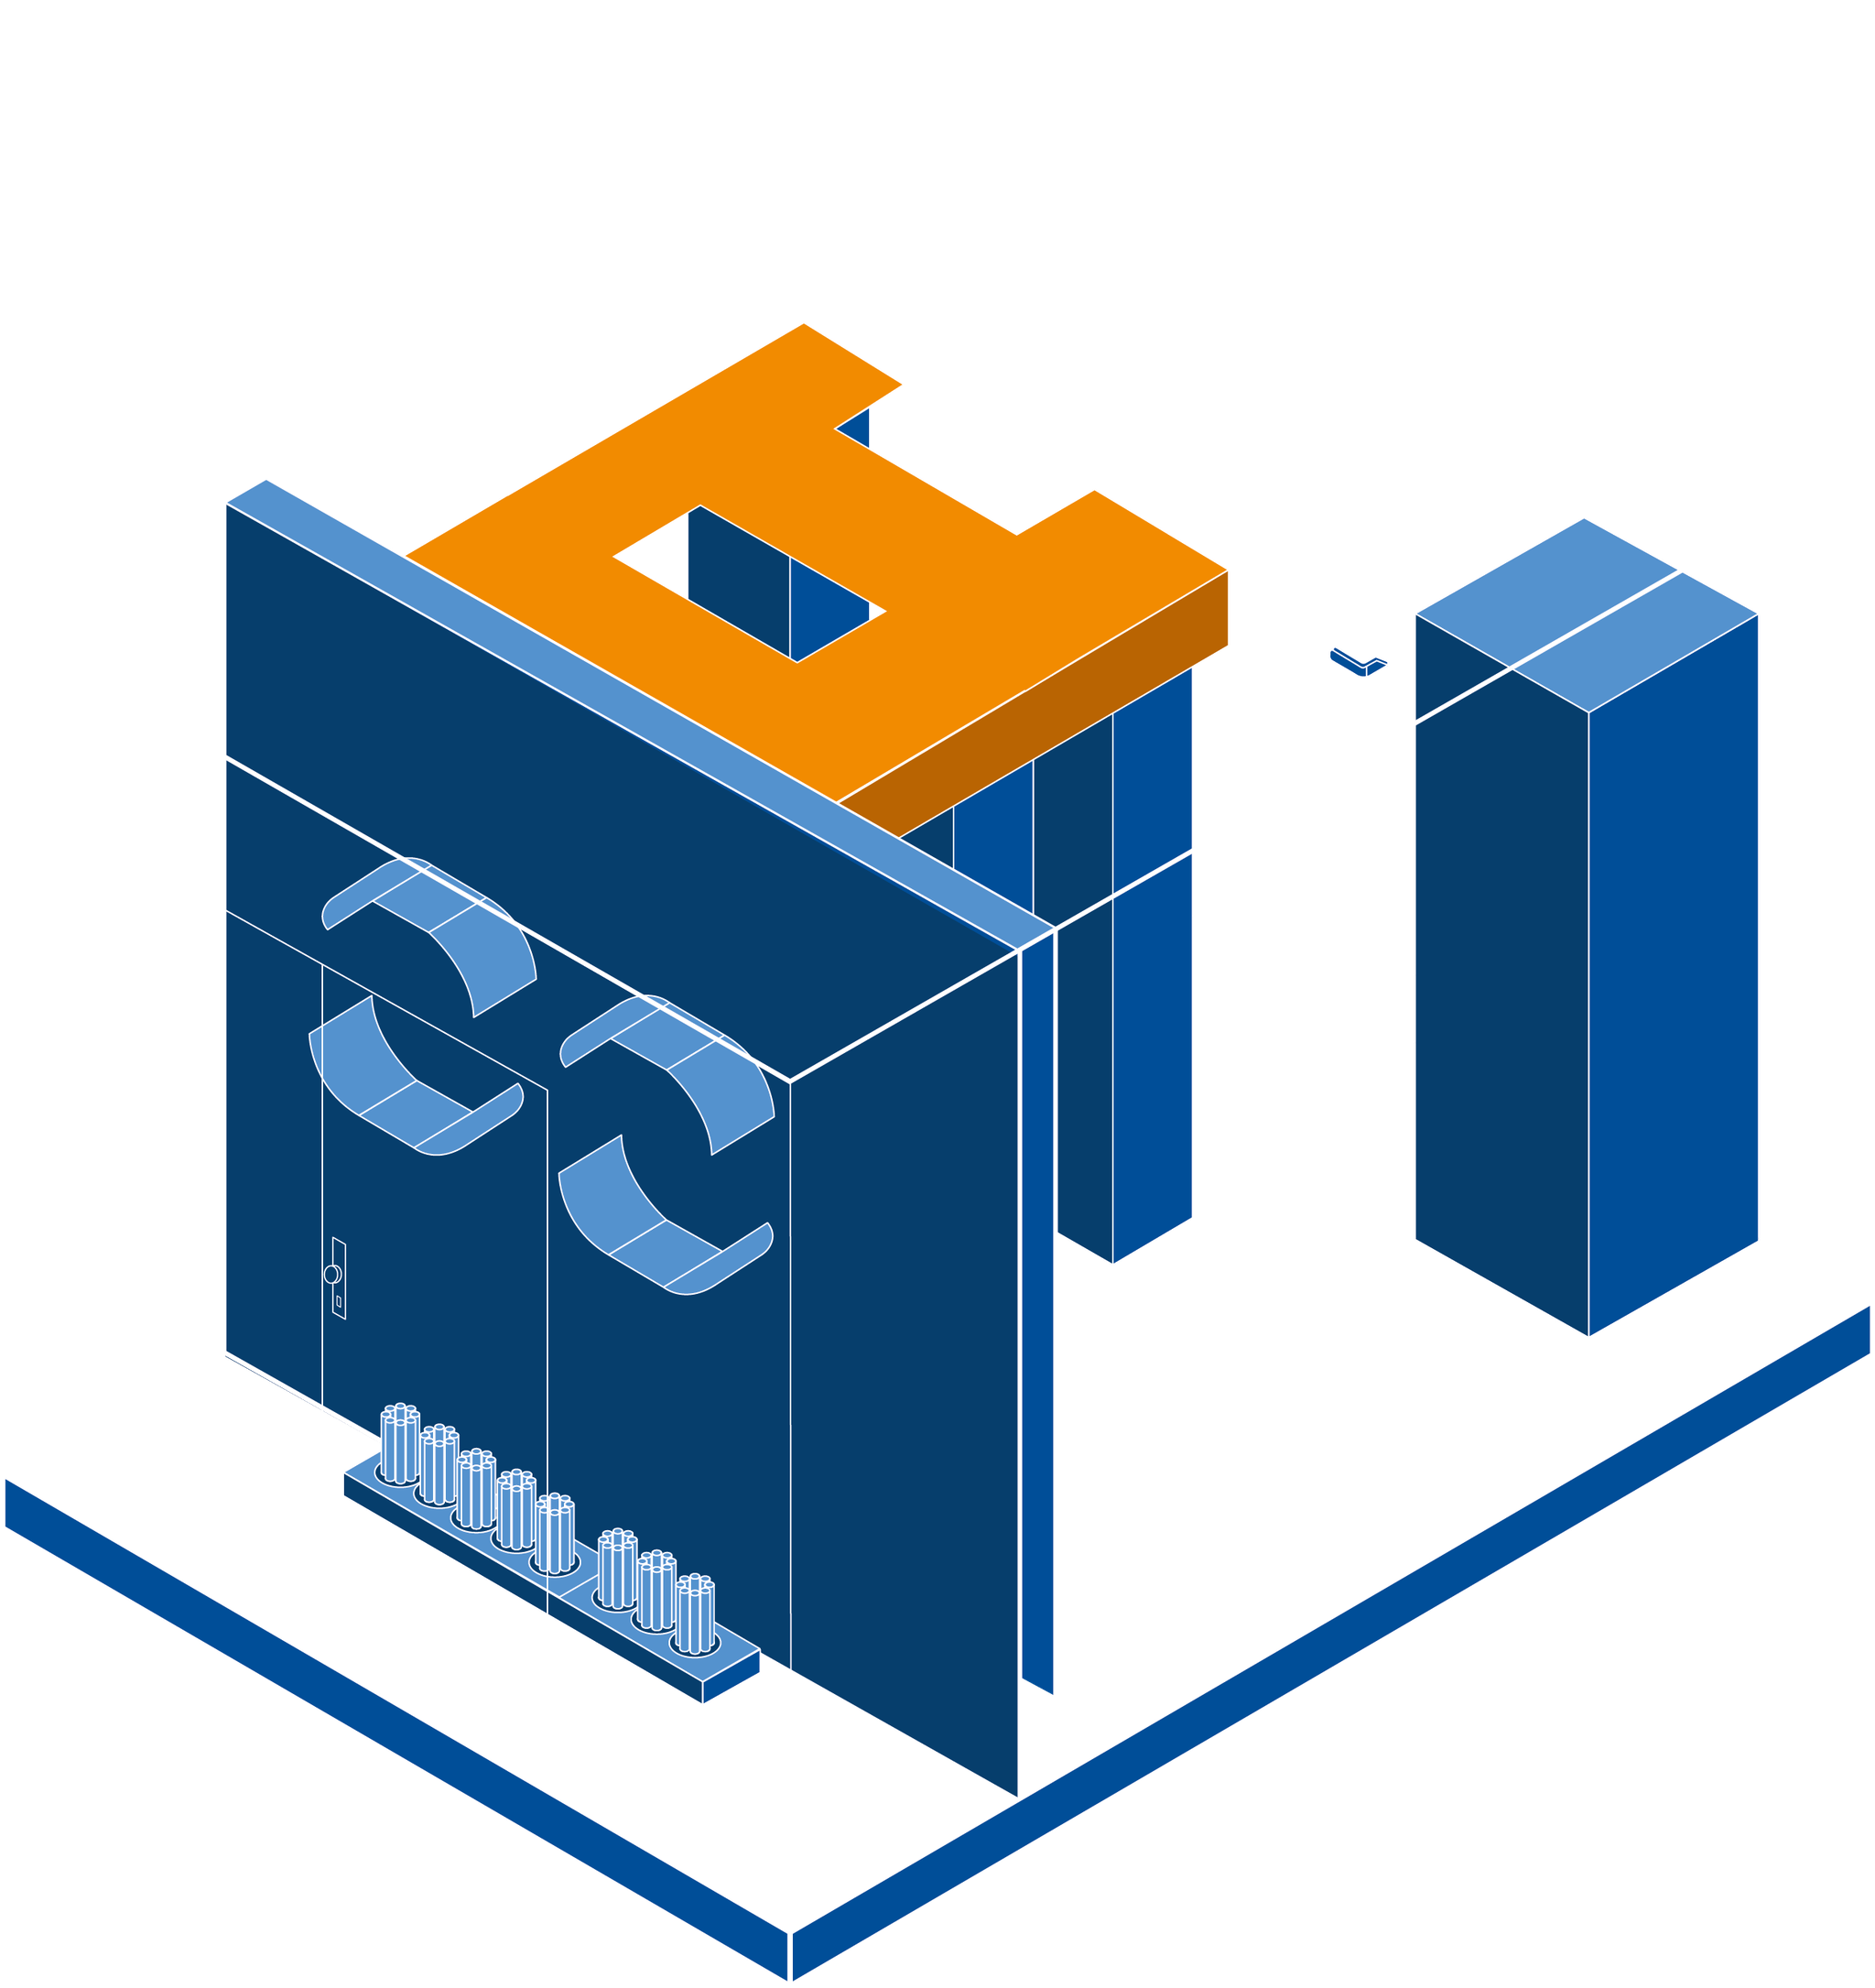 Fibercube-PoP Station 2 Concept de salle